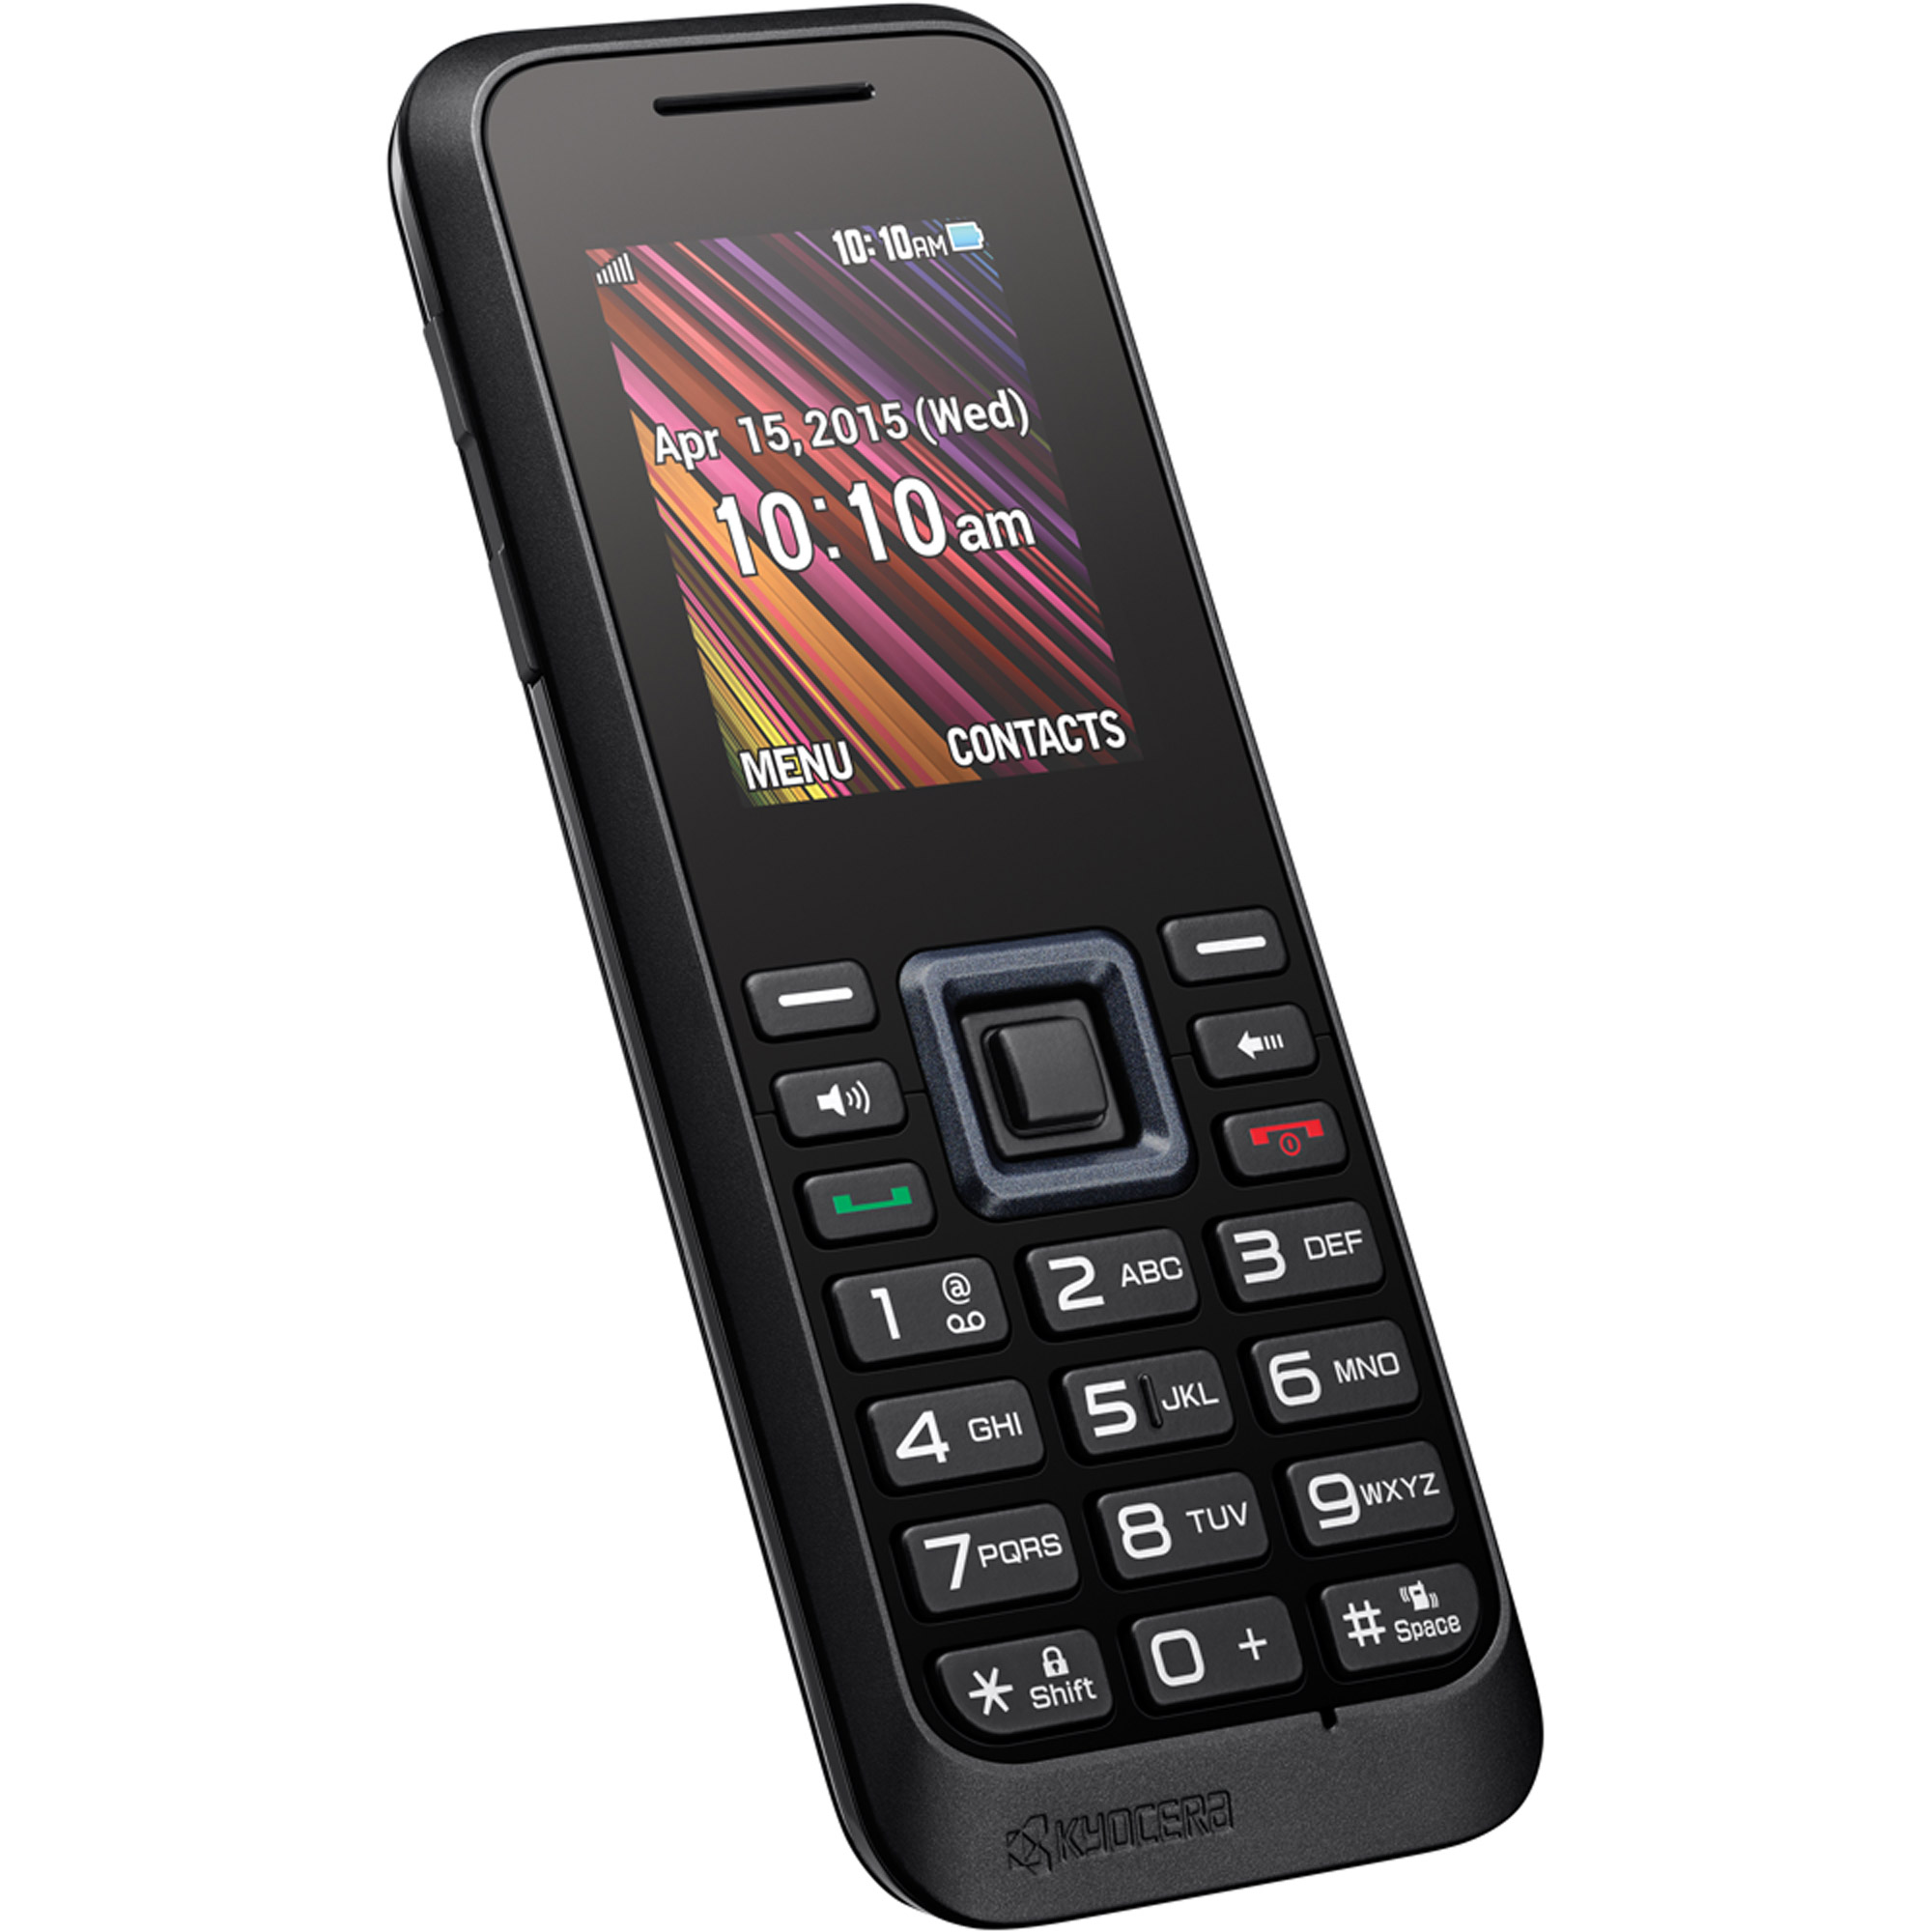 TracFone LG 109C Prepaid Cell Phone, Black - Walmart.com